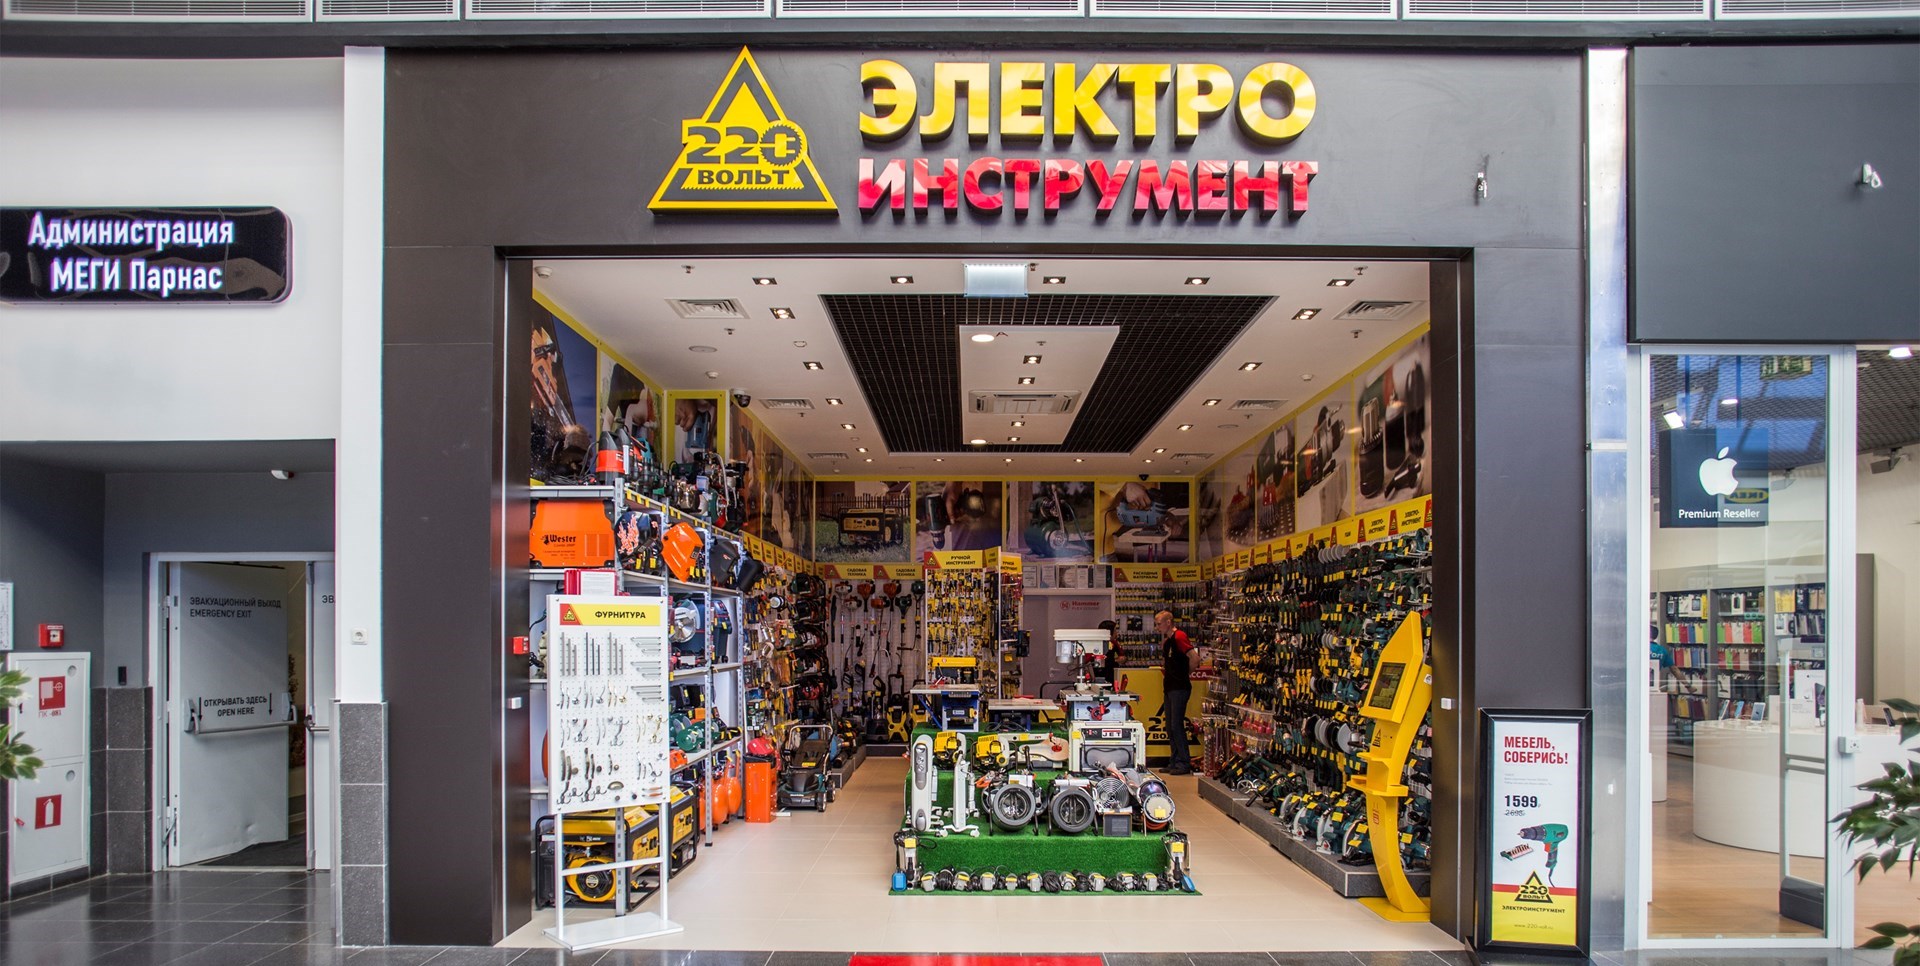 22о Вольт Интернет Магазин Новосибирск